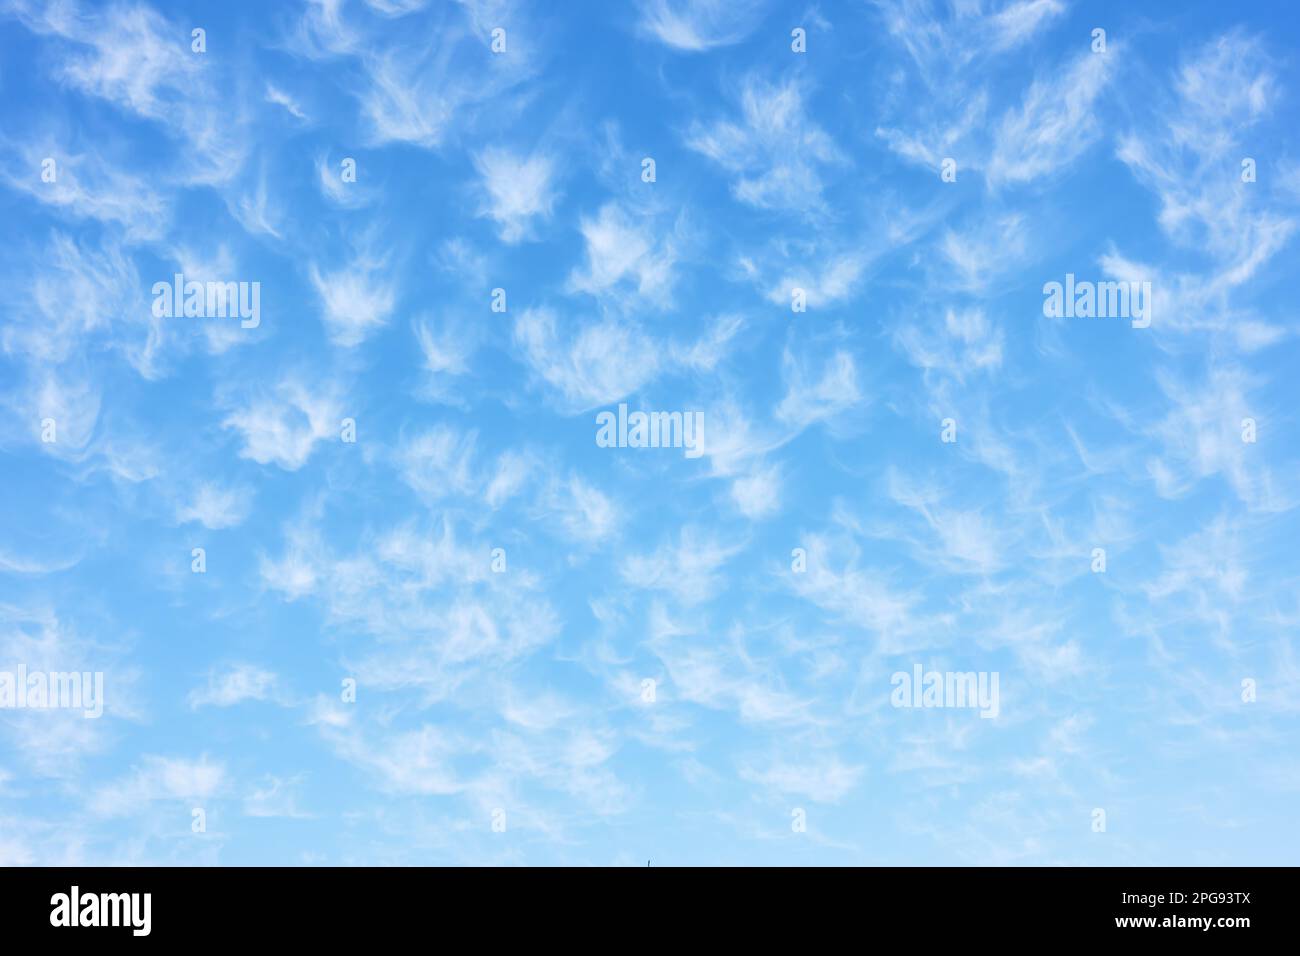 Wunderschöner Himmel mit vielen kleinen Lichtwolken, kann als Hintergrund verwendet werden Stockfoto